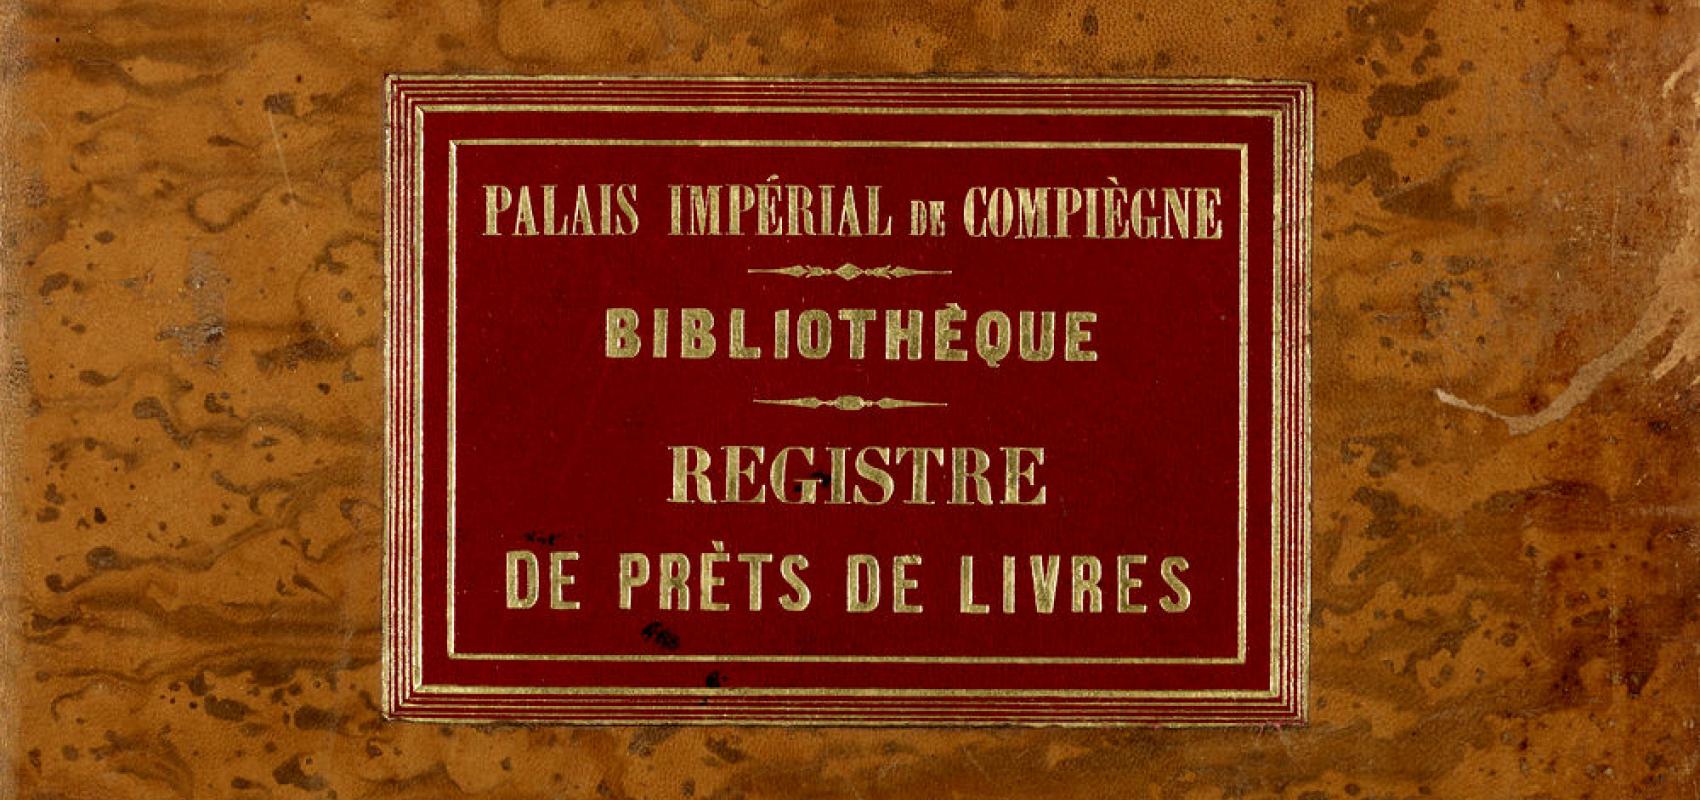 Palais impérial de Compiègne. Bibliothèque. Registre de prêts de livres -  - BnF